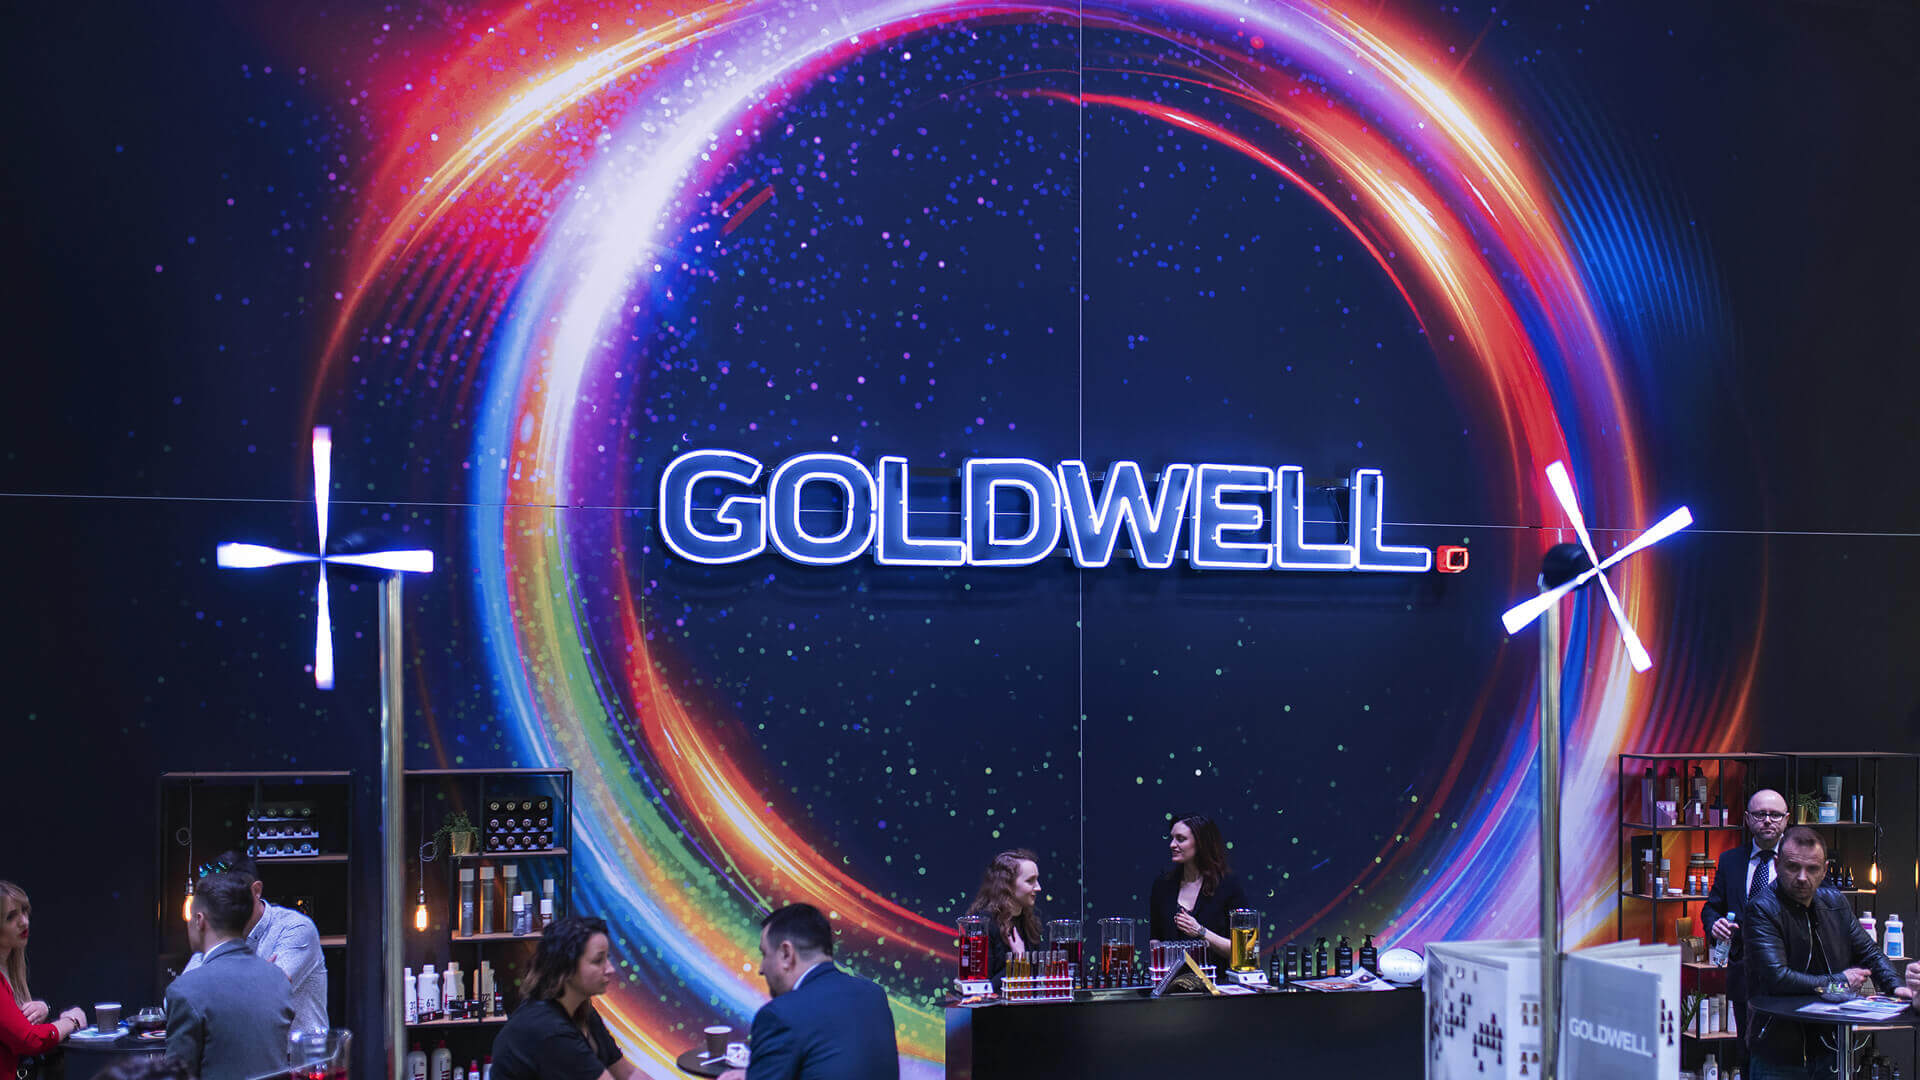 Goldwell goldwel - Schieberegler-Neons-Poznan-Goldwell-Ziel-Neons-Poznan-Buchstaben-Schreib-Neons-Neons-an-der-Wand-farbig-Neons-auf-Klebeband